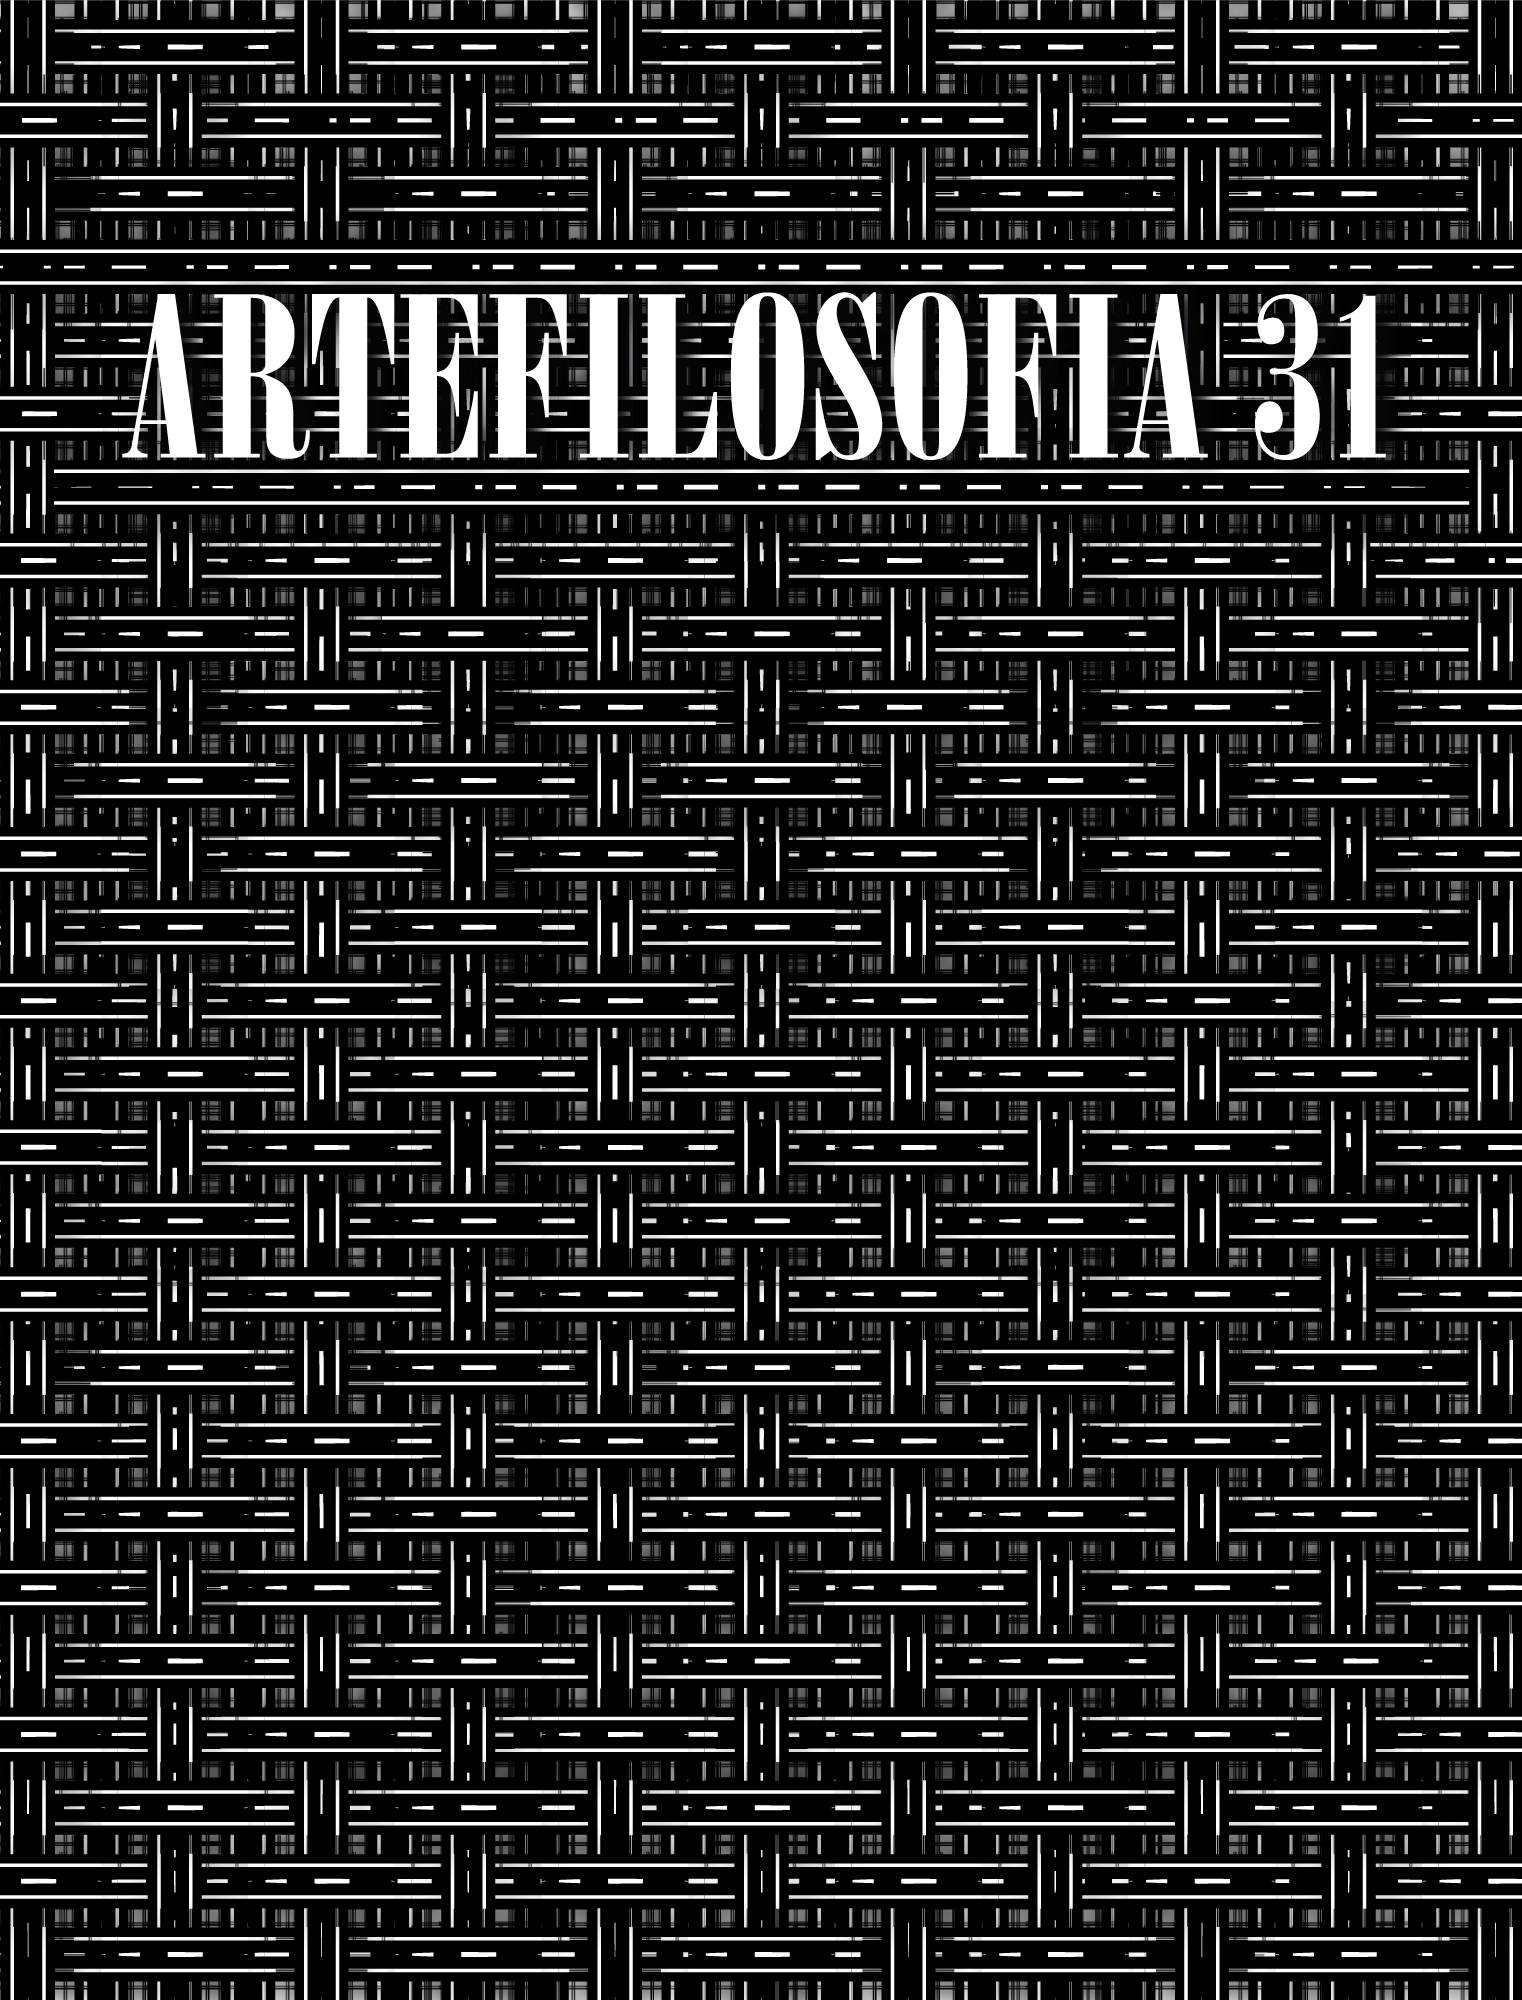 A â€œinconfidÃªnciaâ€ da arte - revista artefilosofia - Ufop